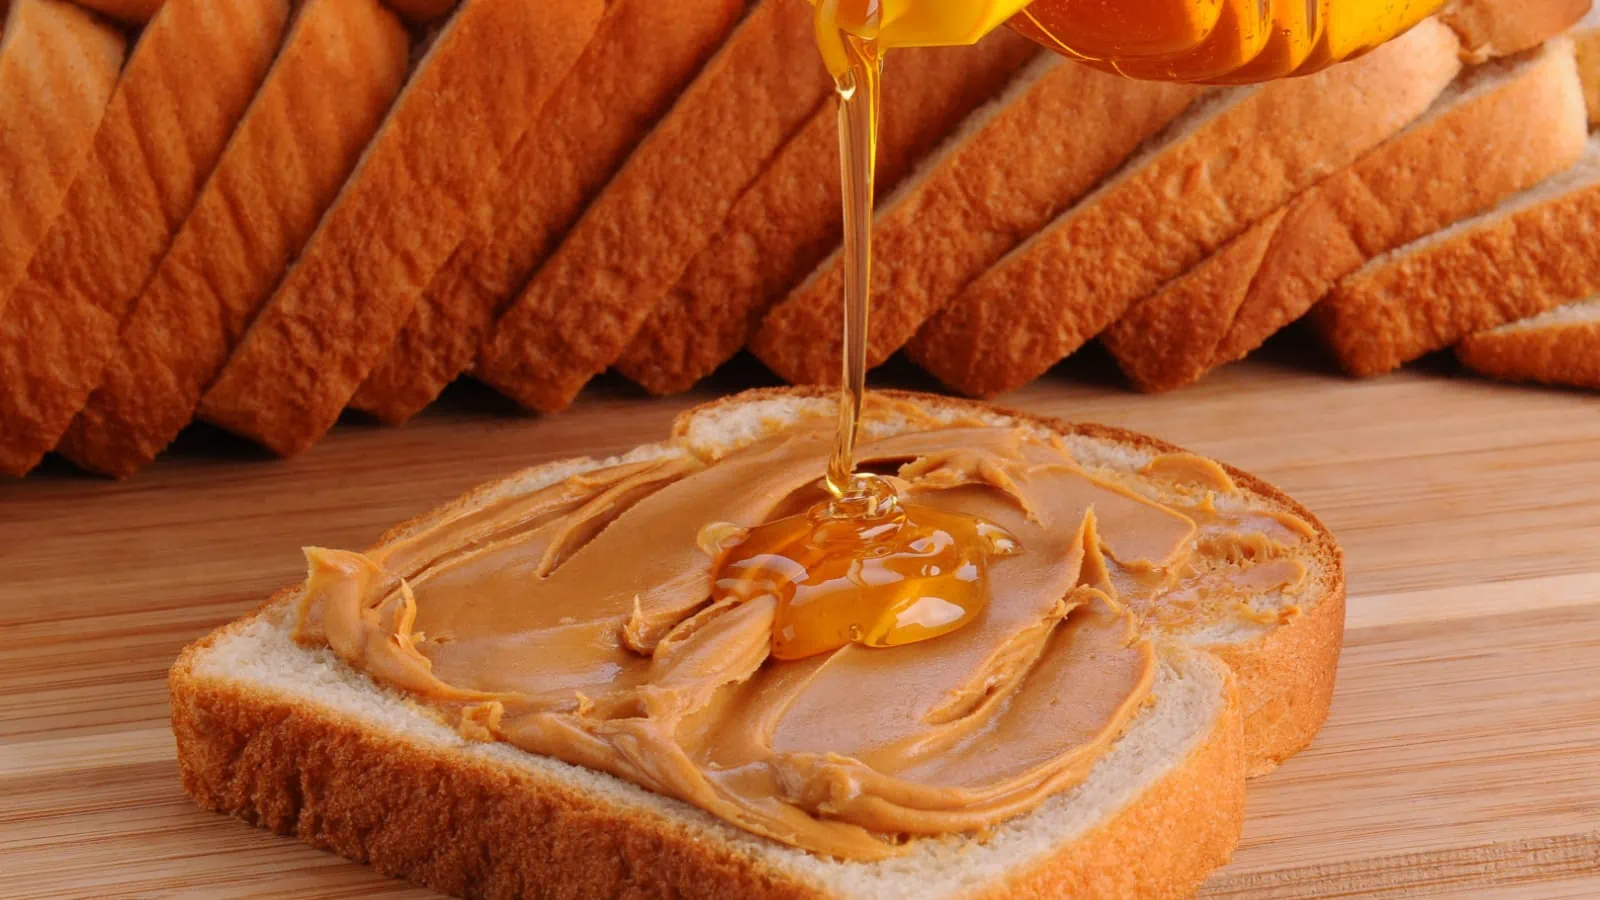 Peanut butter and honey sandwich